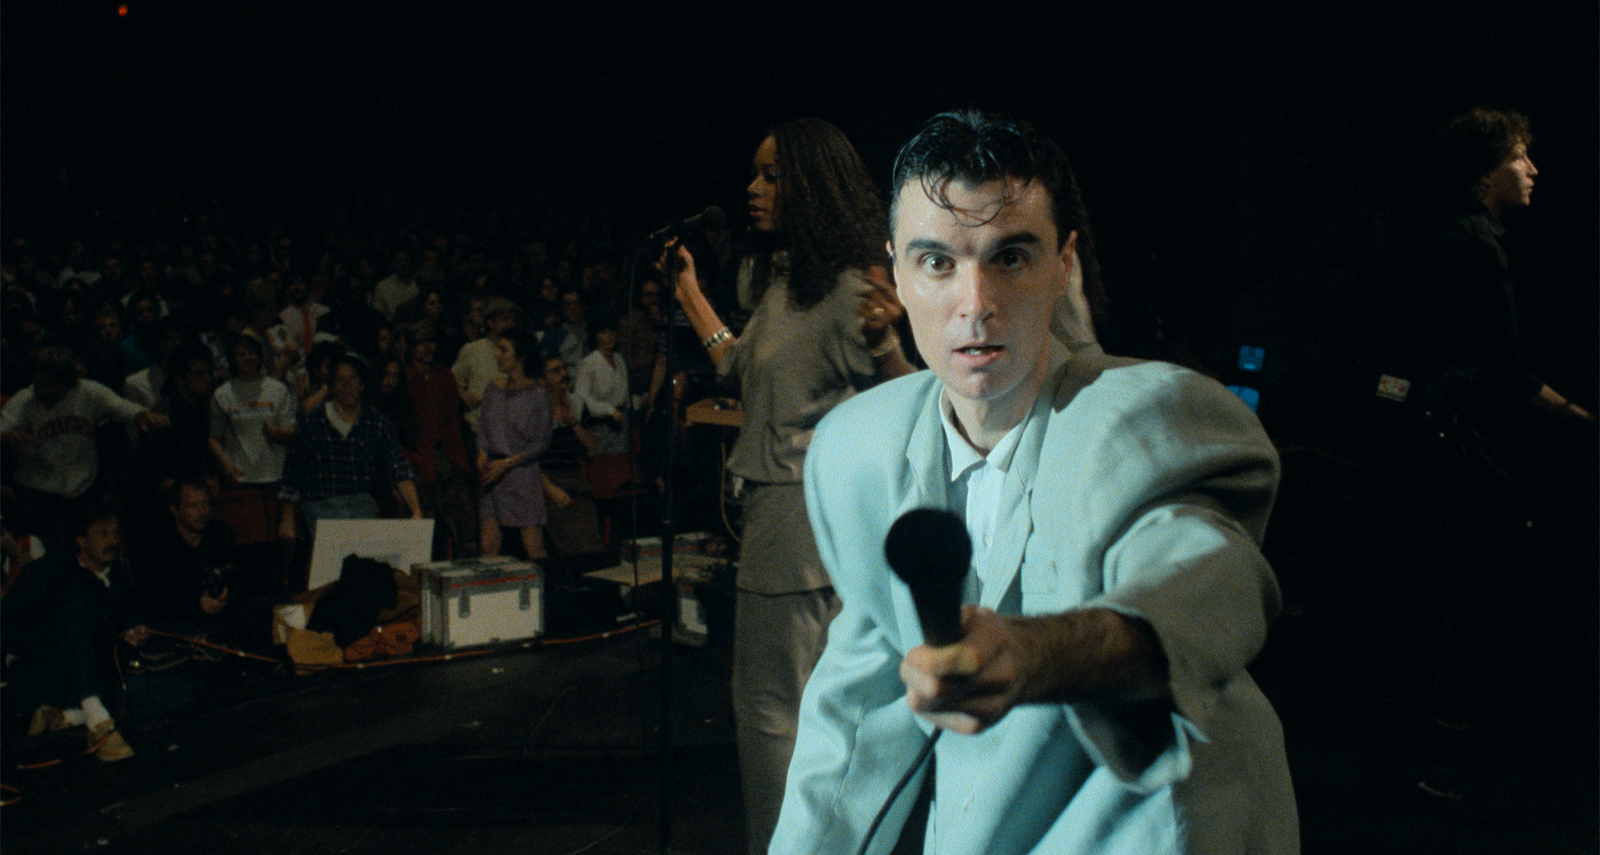 Νέες ταινίες: Οι Talking Heads στο καλύτερο concert movie όλων των εποχών